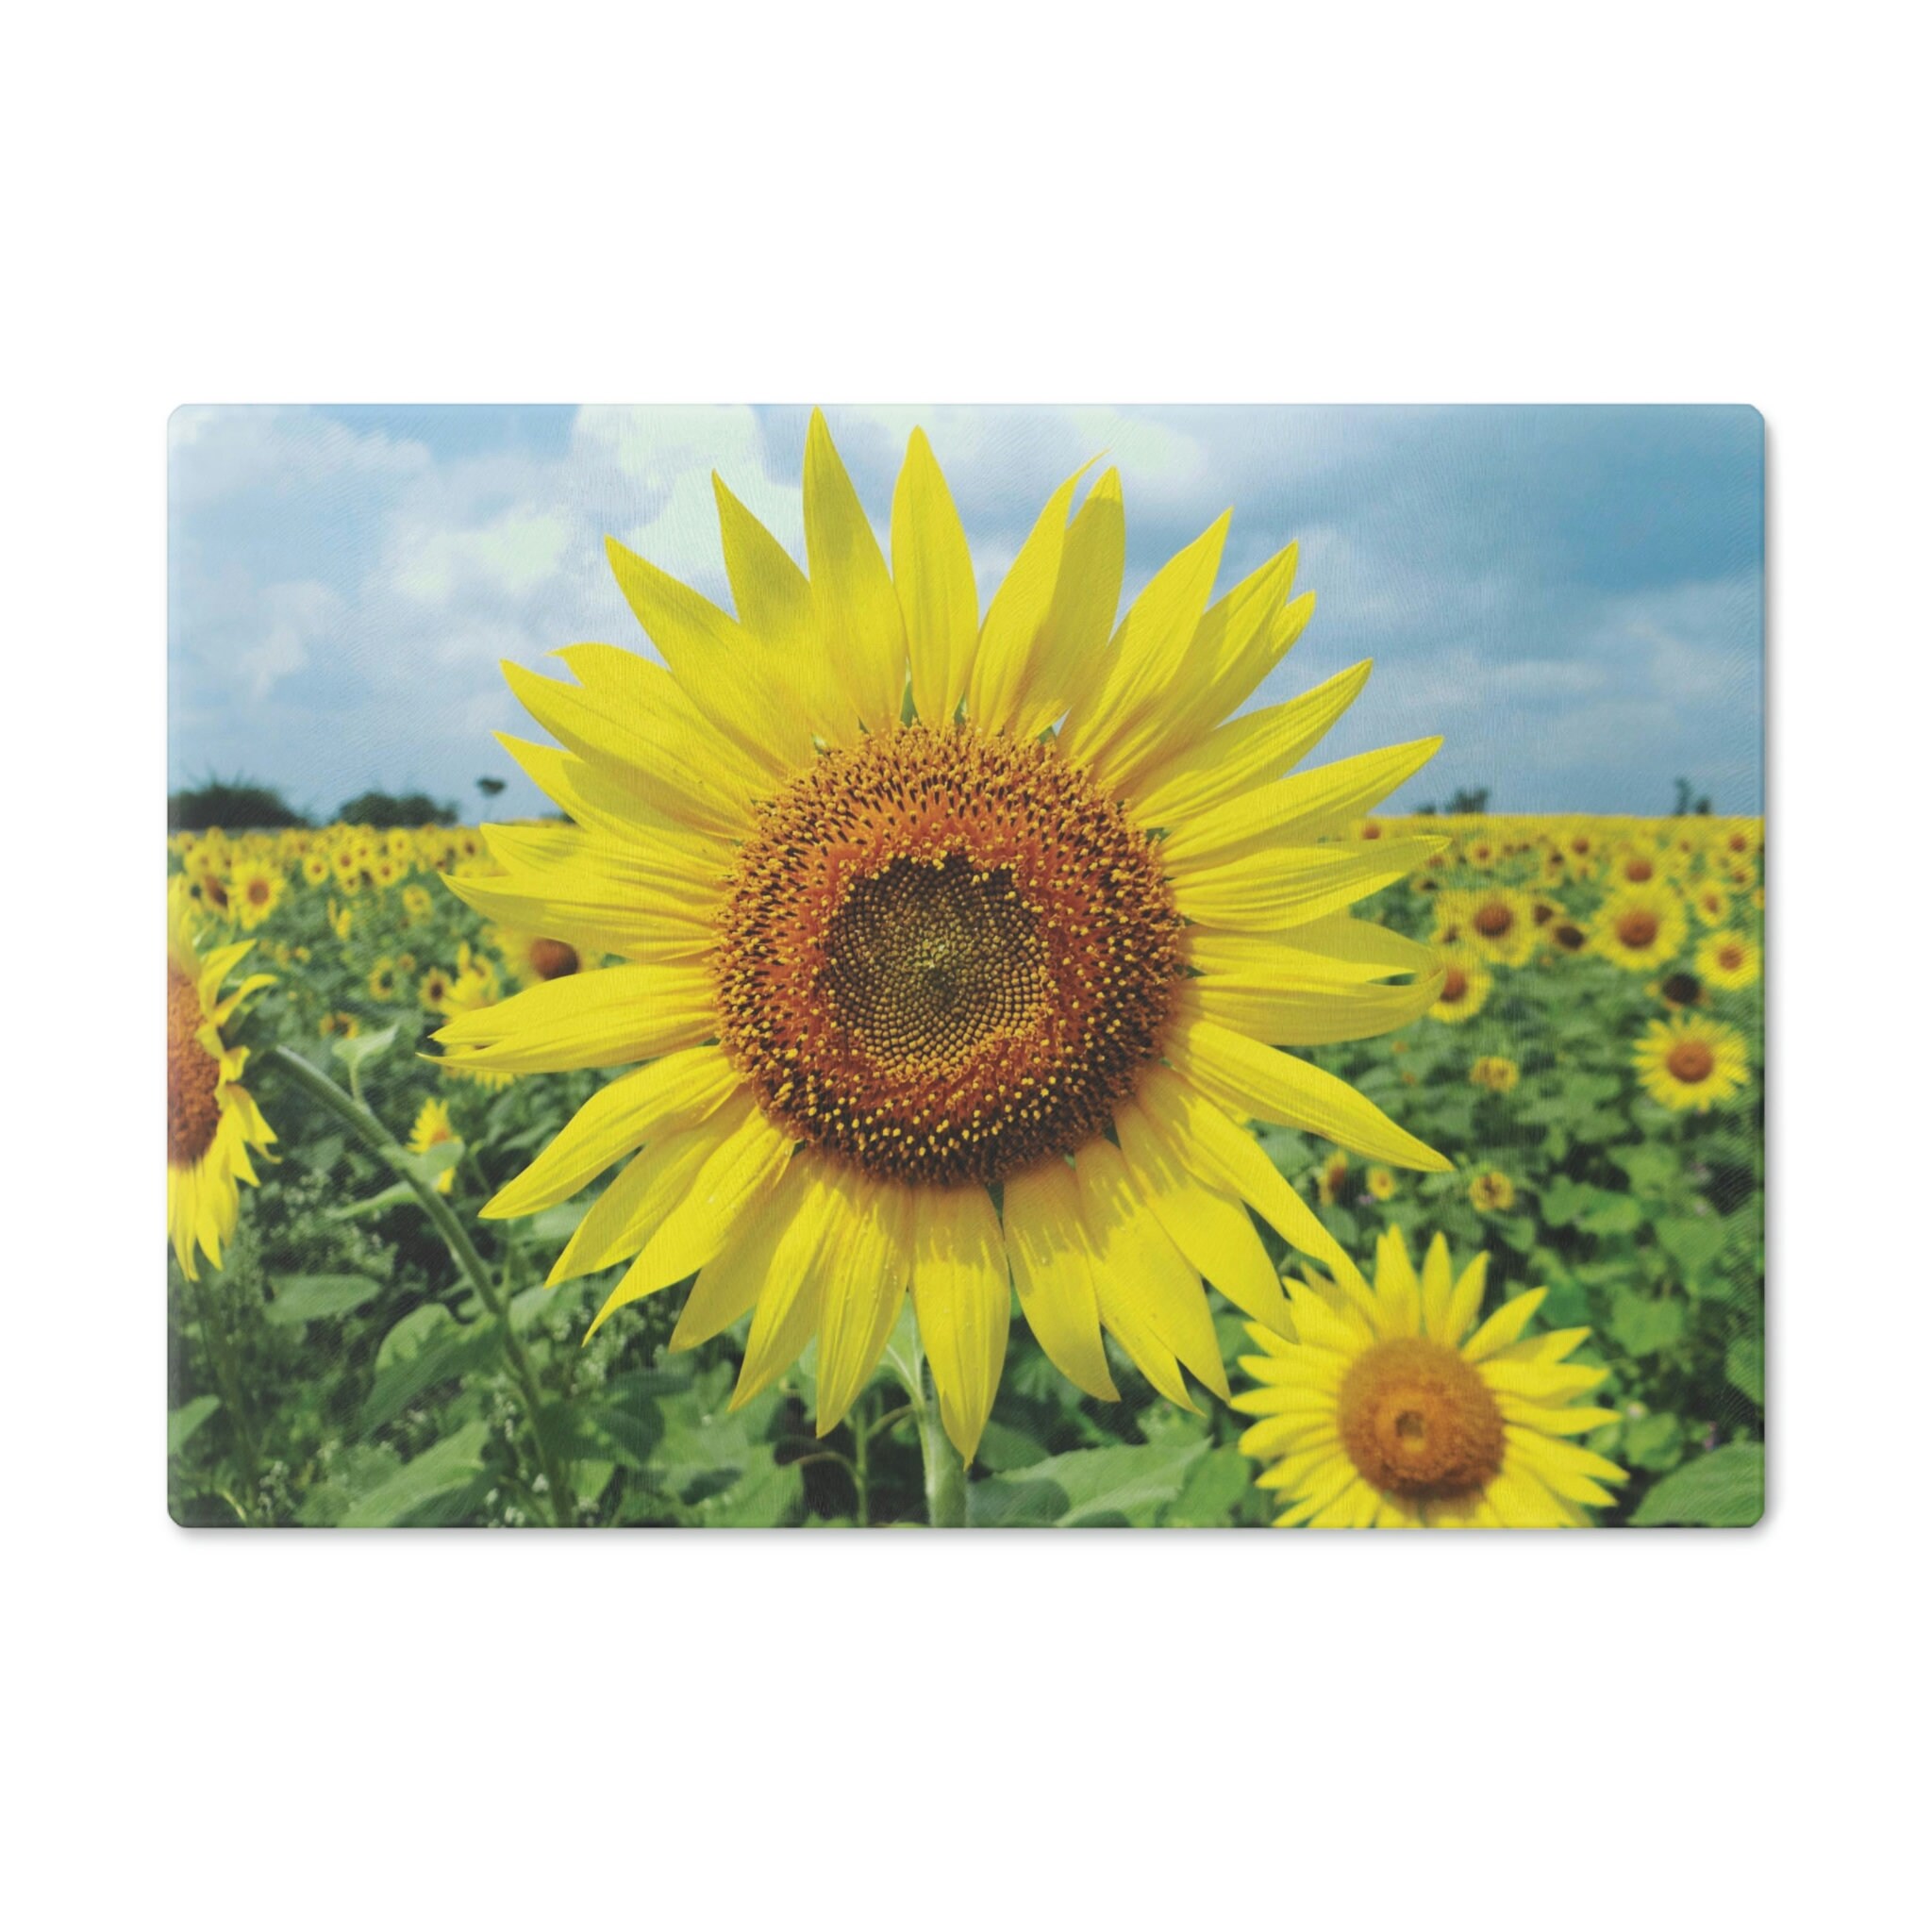 Sunflower Cutting Board, Sunflower Decor, Glass Cutting Board